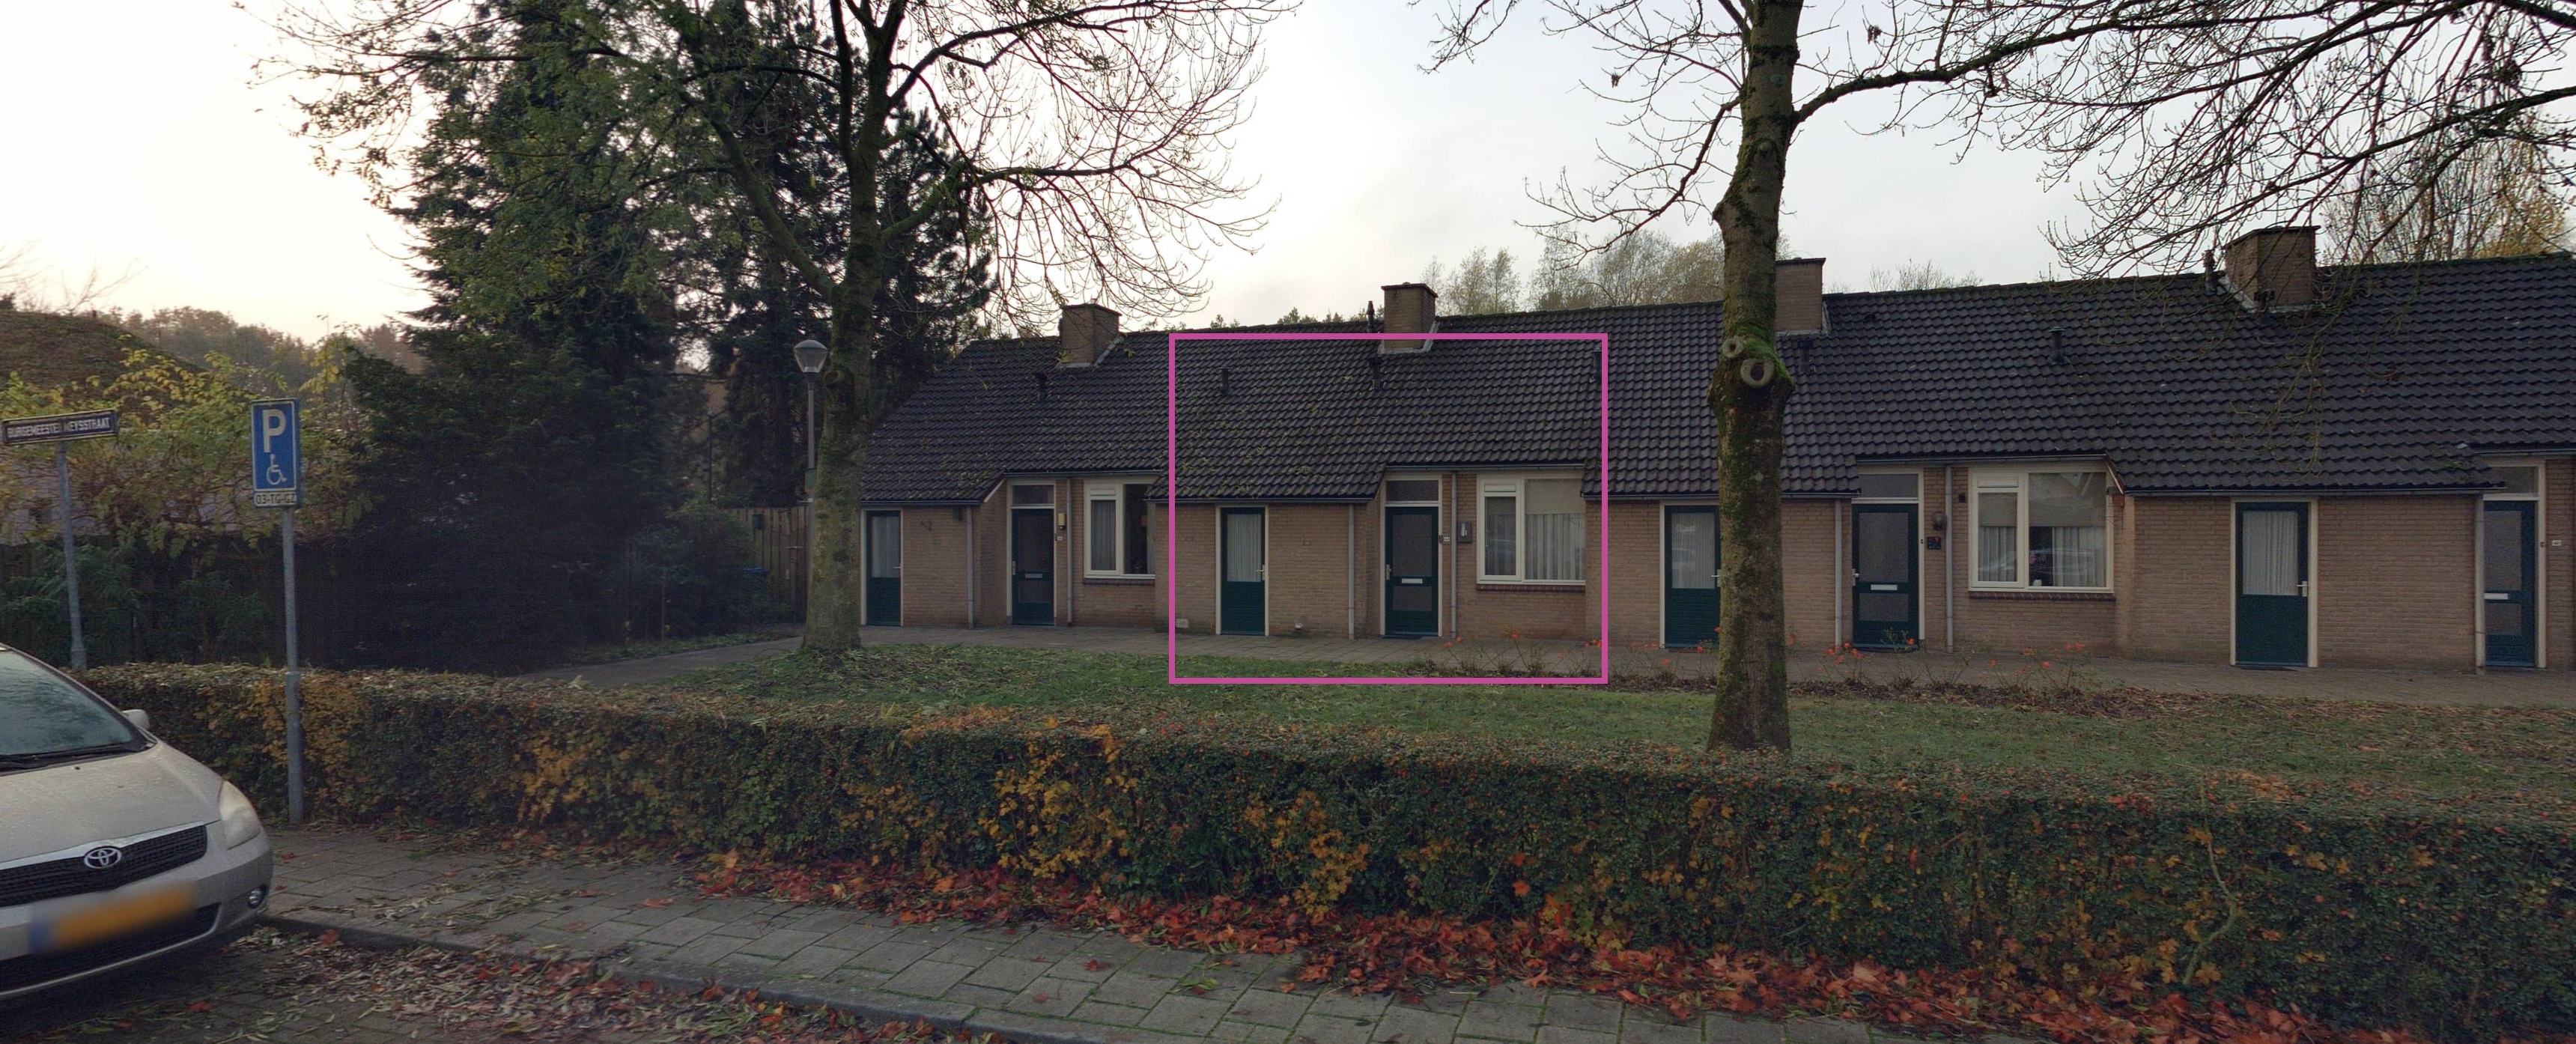 Burgemeester Meijsstraat 44, 5236 AE 's-Hertogenbosch, Nederland